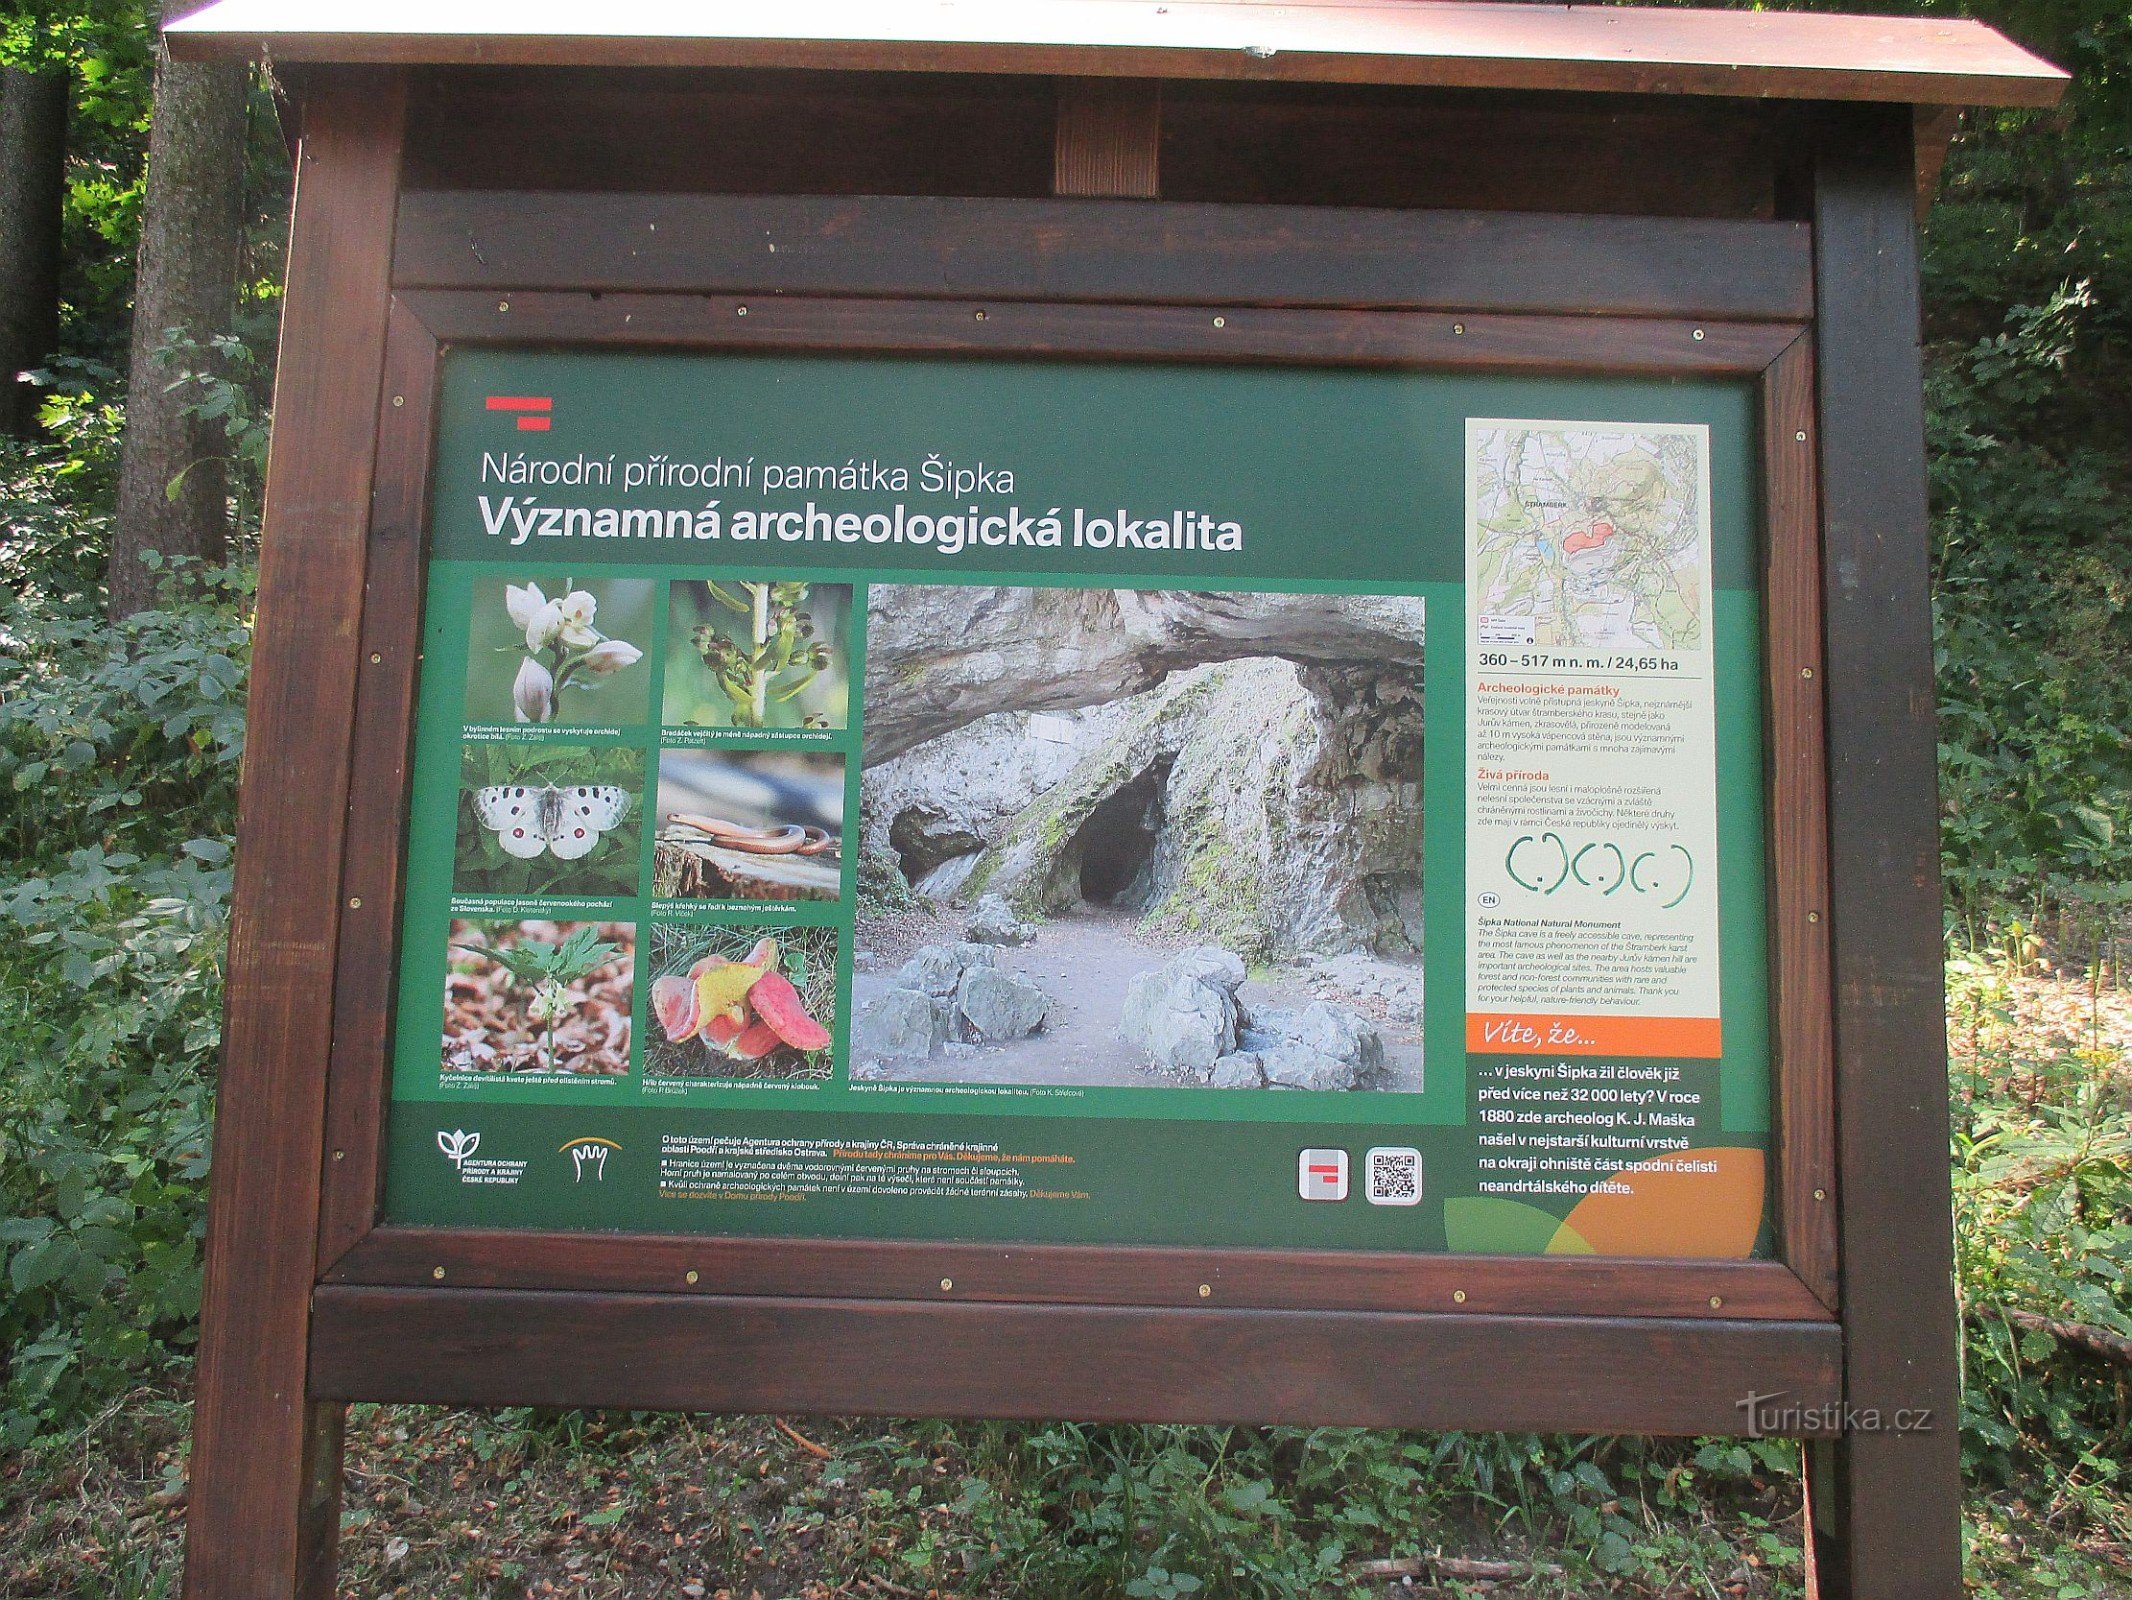 Monumento Natural Nacional de Šipka